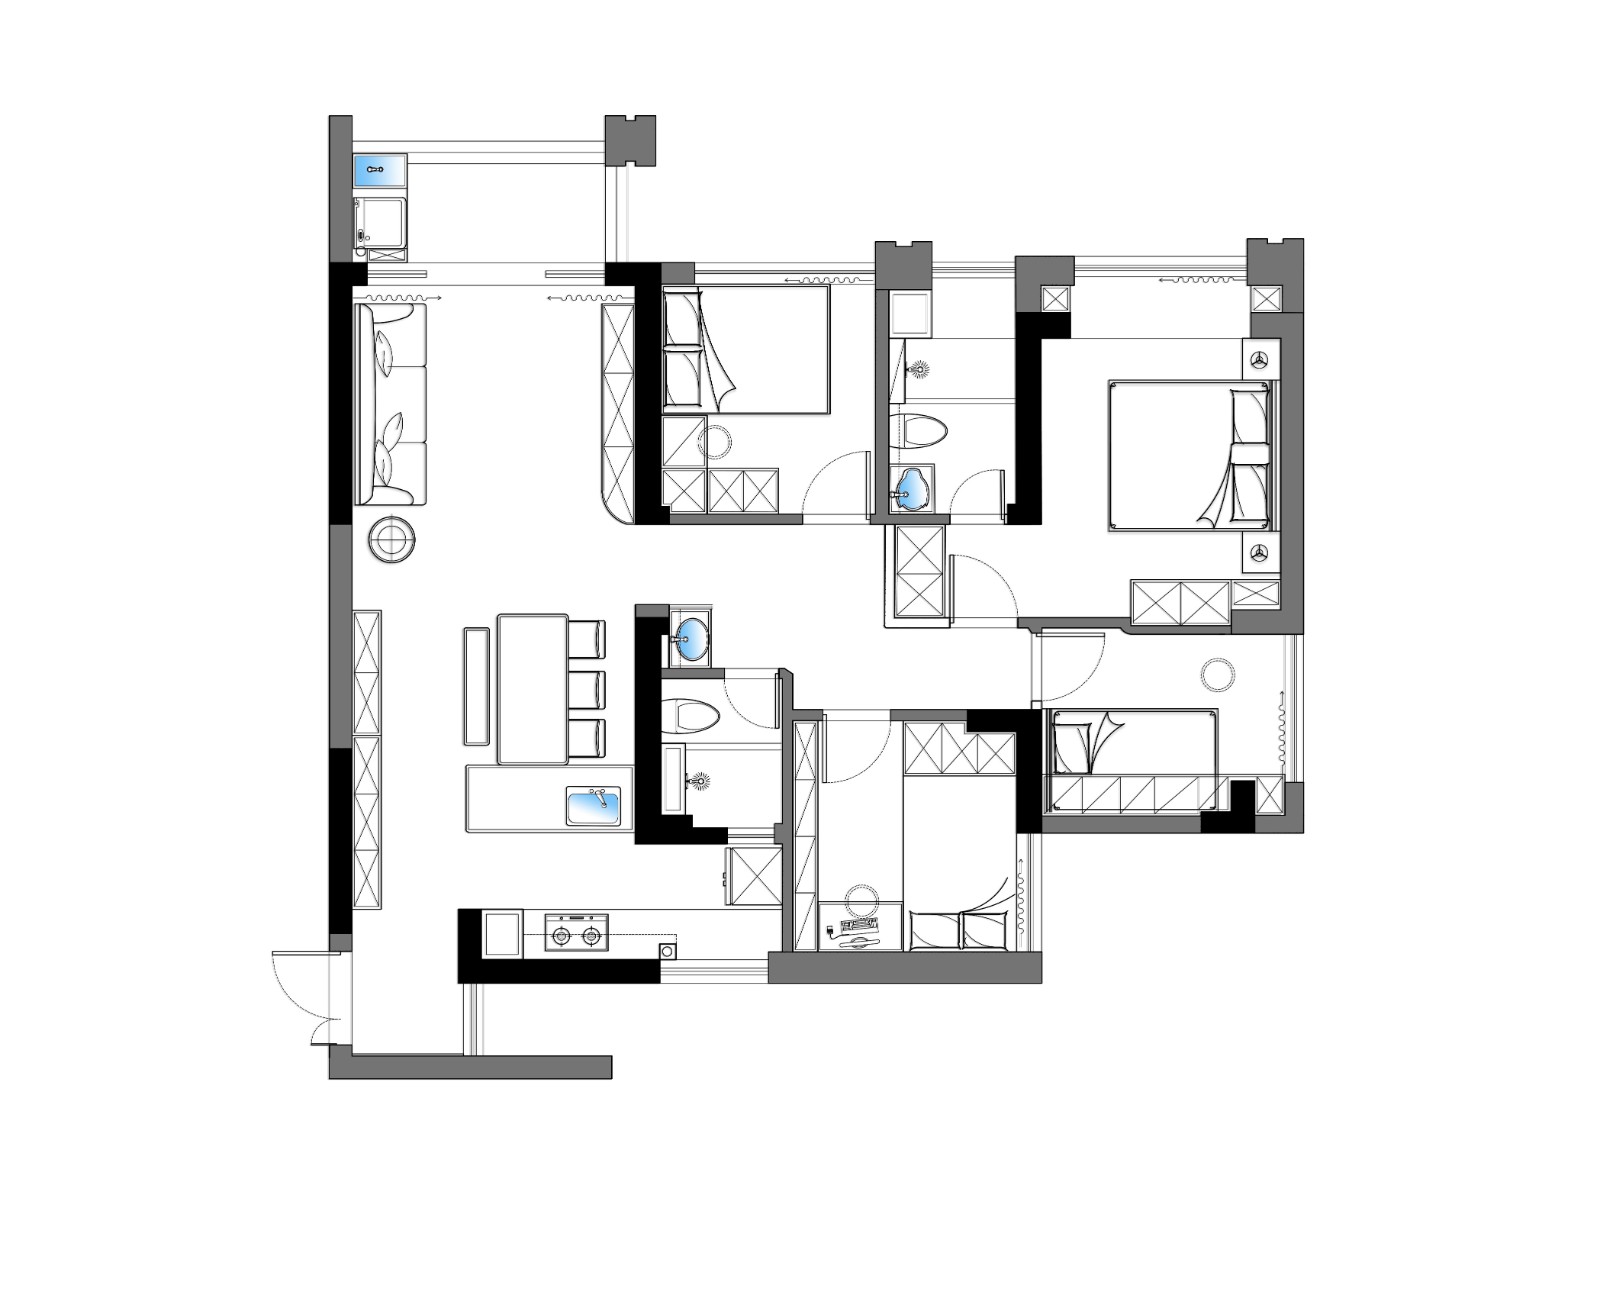 95现代两房装修效果图,静谧悠长的家居氛围装修案例效果图-美广网(图1)